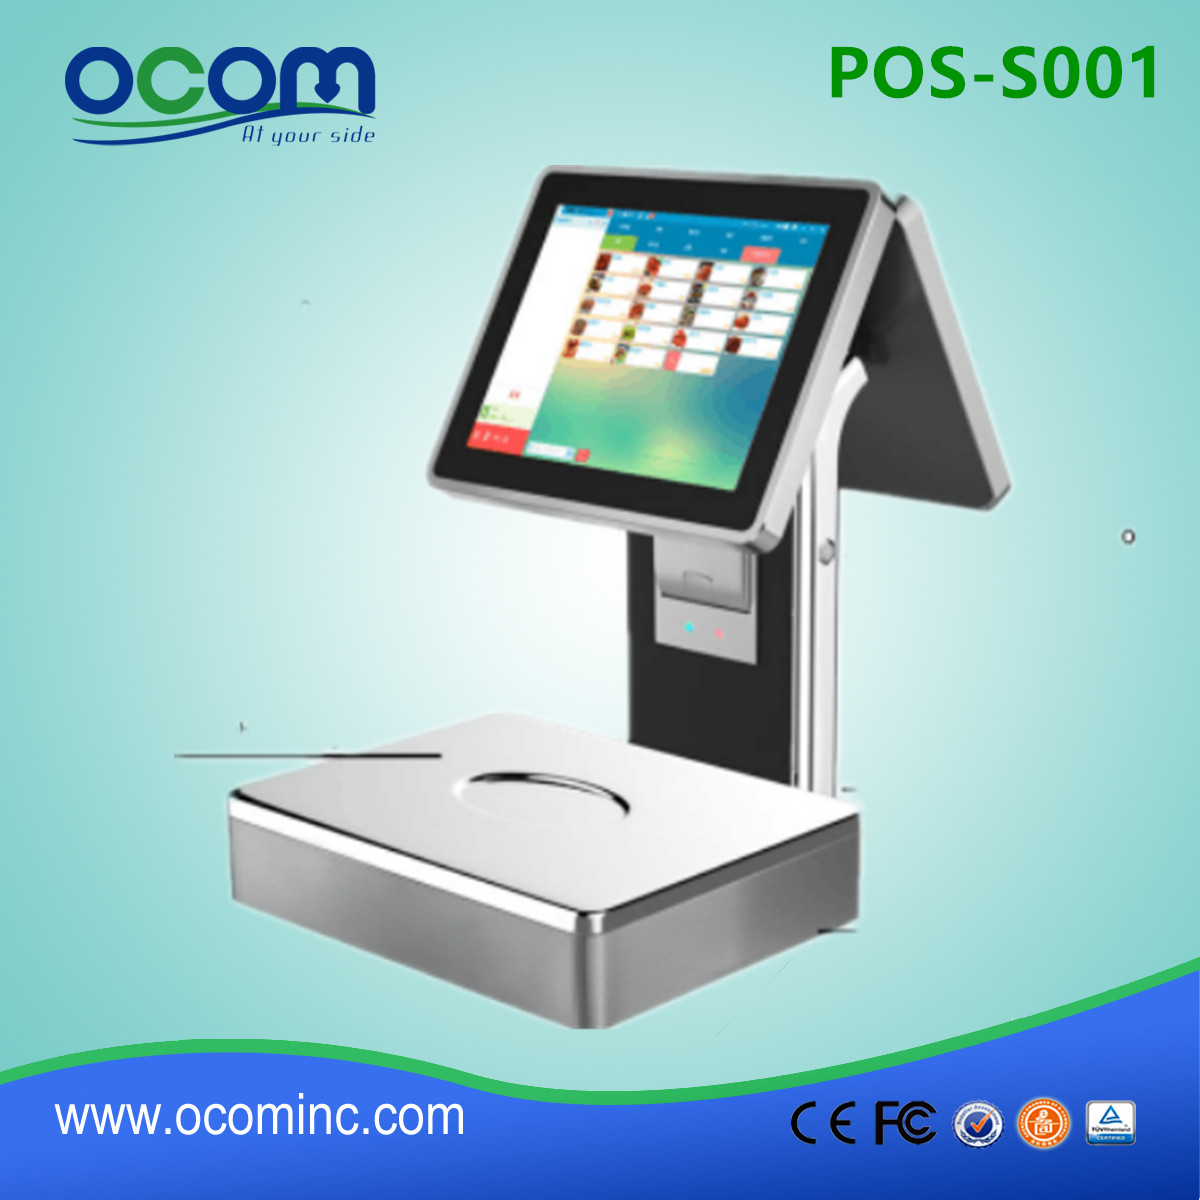 POS-S001-Nuovo modello di scala POS touch screen con stampante 58mm